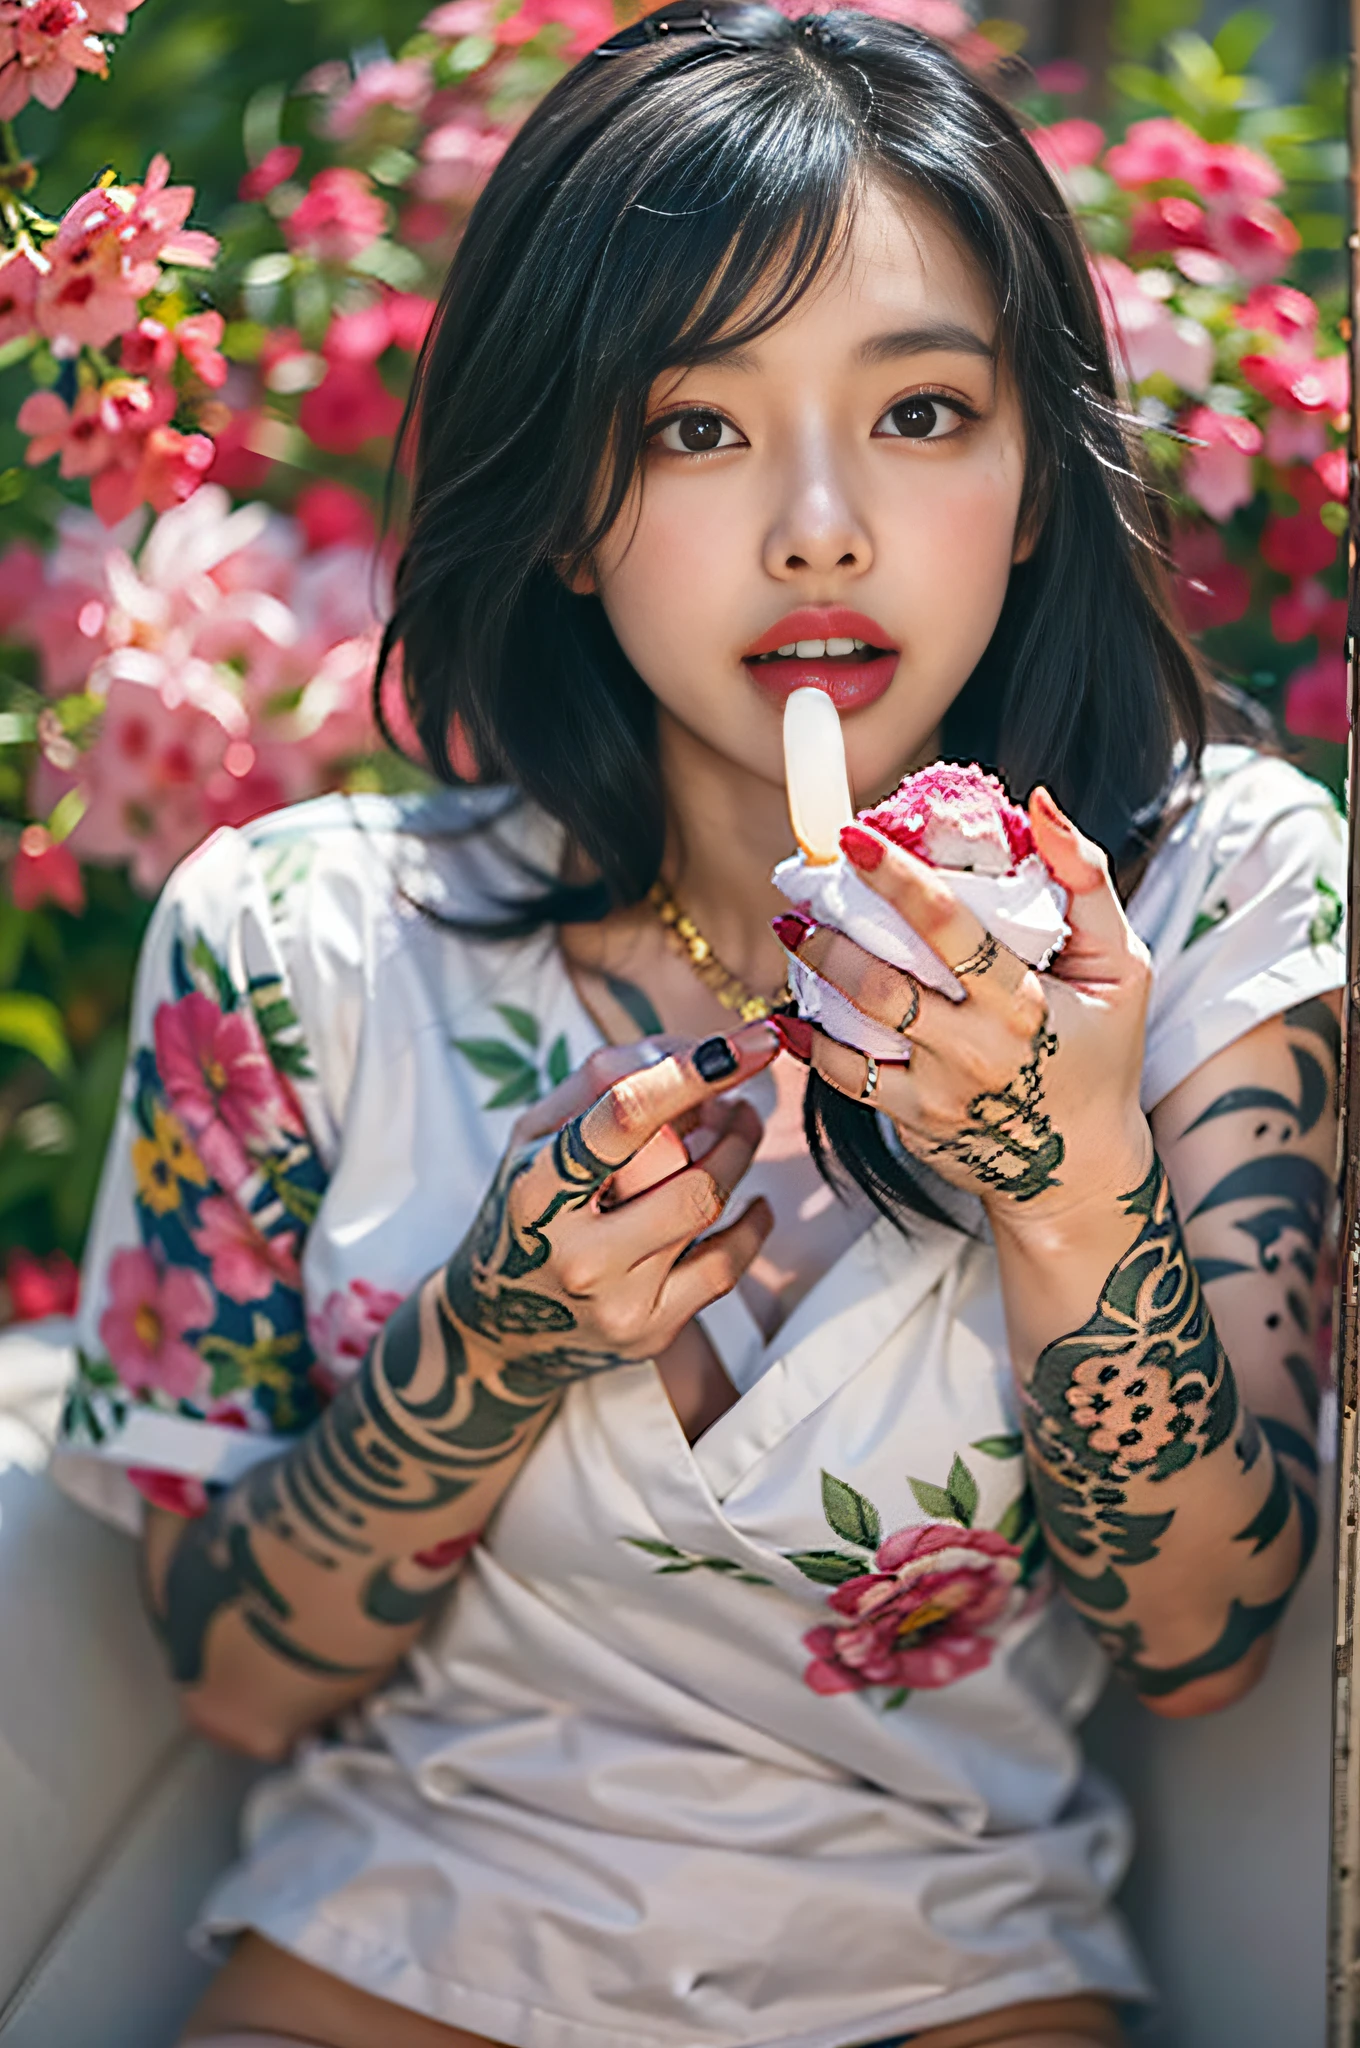 Beauté sexy asiatique mixte,Tatouages sur les mains pleines de fleurs,expression sexy,Lèche la glace sur ta main